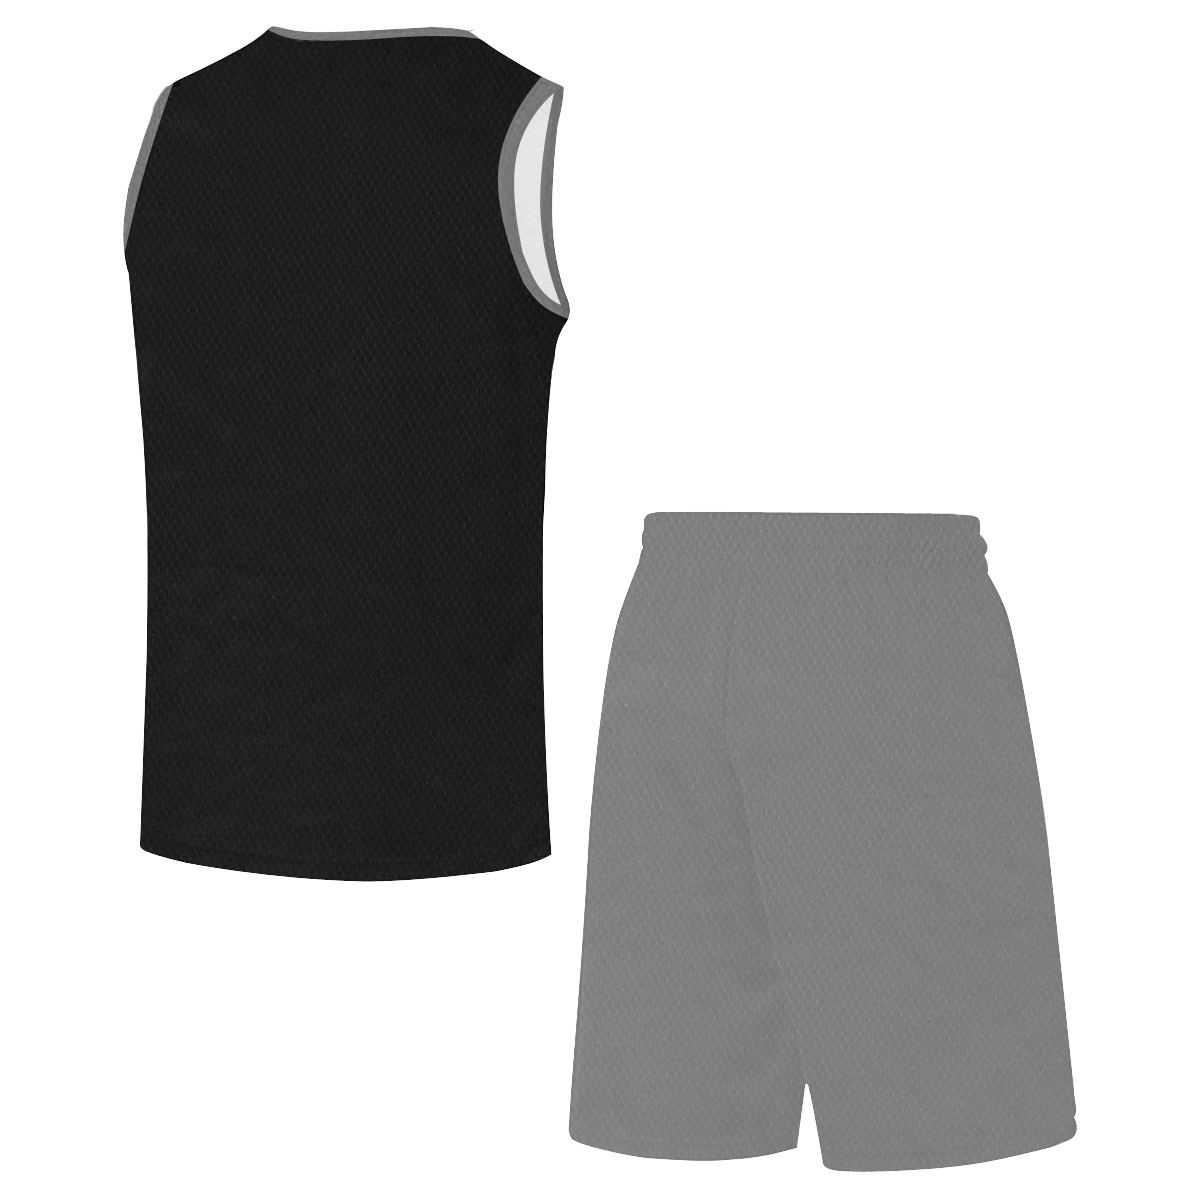 Basketball Sports Black and Gray All Over Print Basketball Uniform